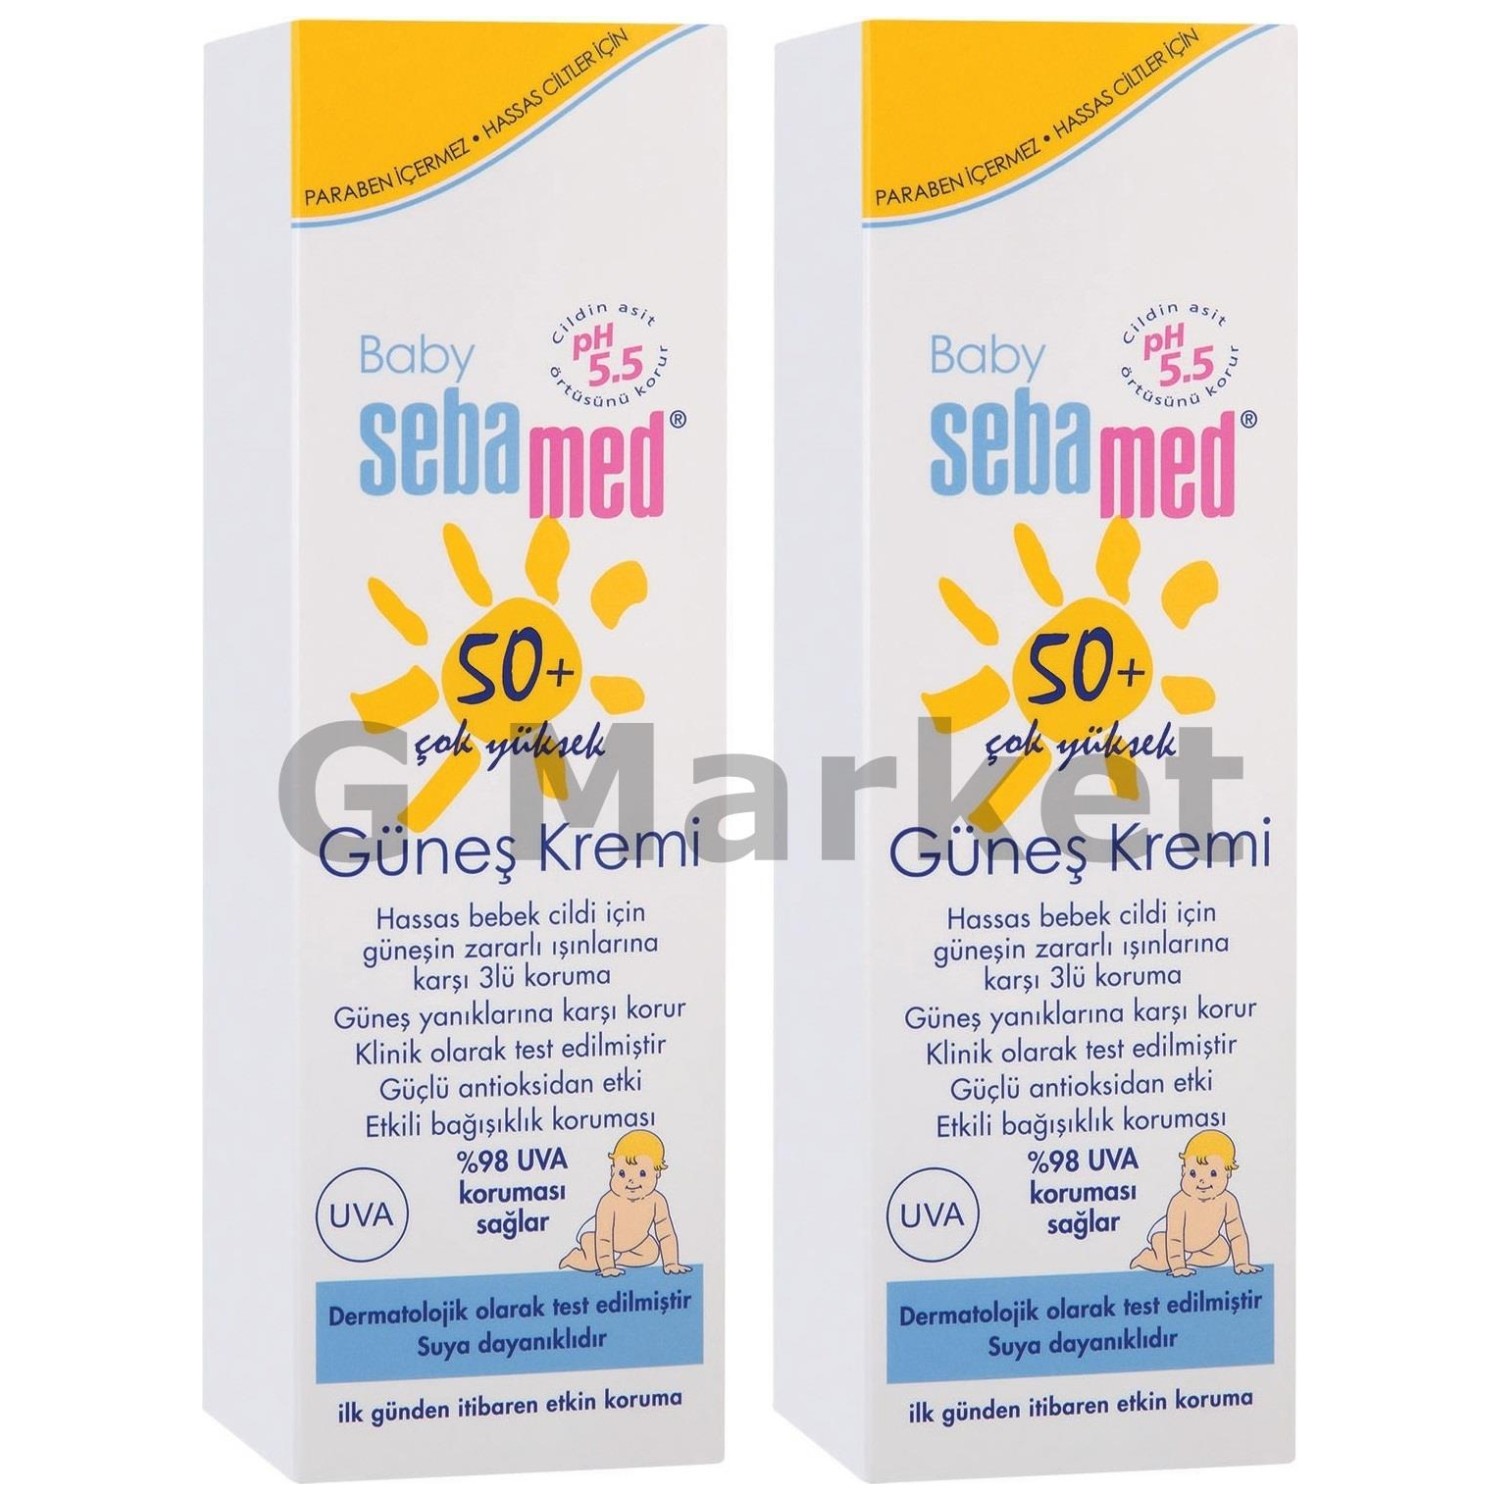 Солнцезащитный крем Sebamed Baby SPF 50+, 2 флакона по 75 мл